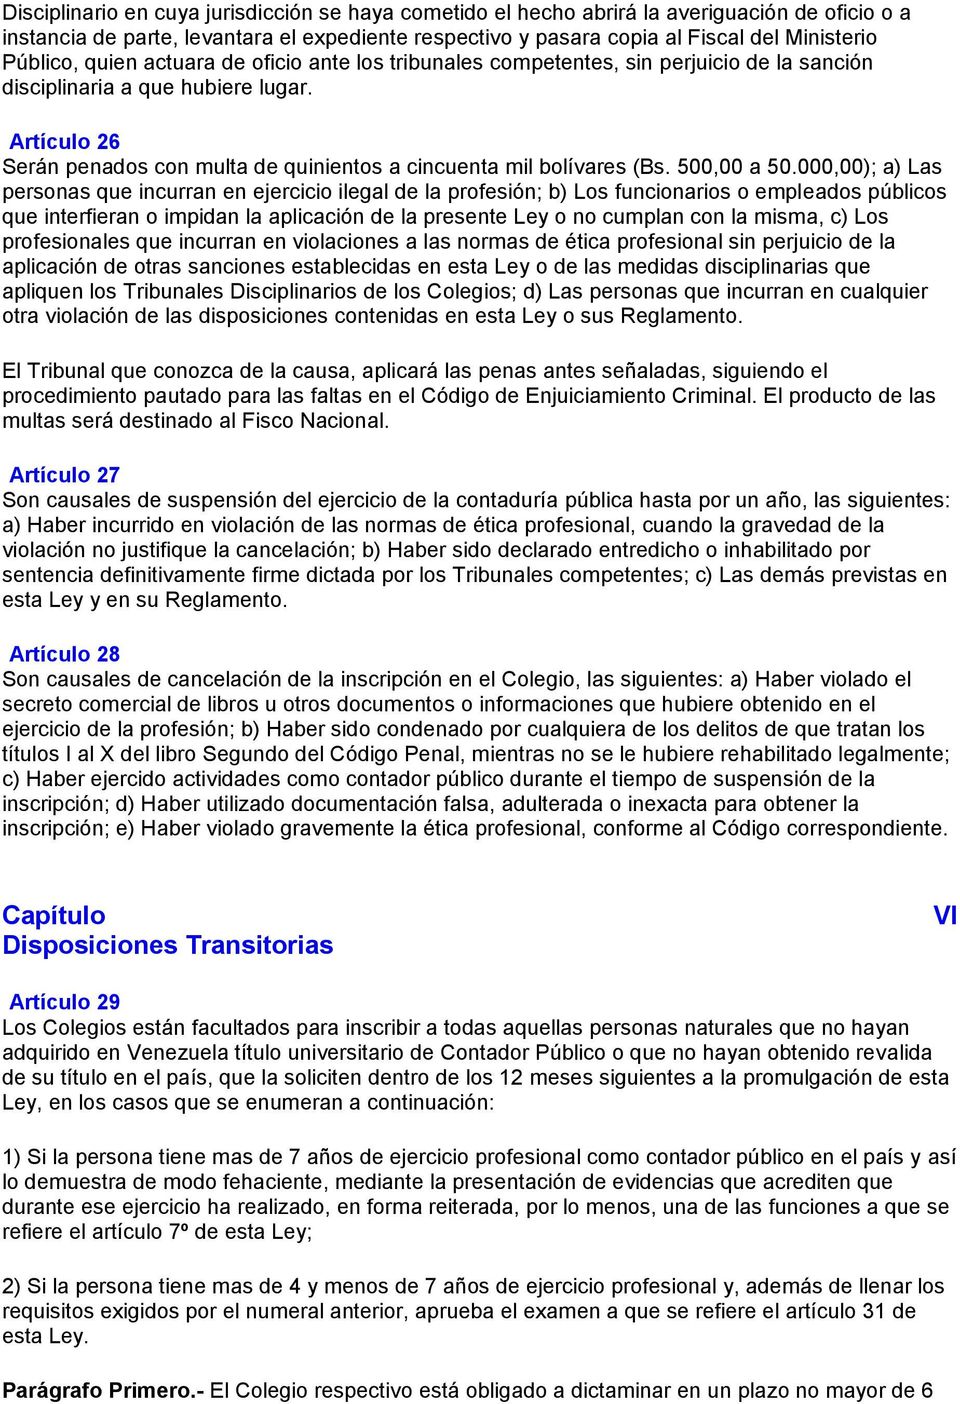 Artículo 26 Serán penados con multa de quinientos a cincuenta mil bolívares (Bs. 500,00 a 50.